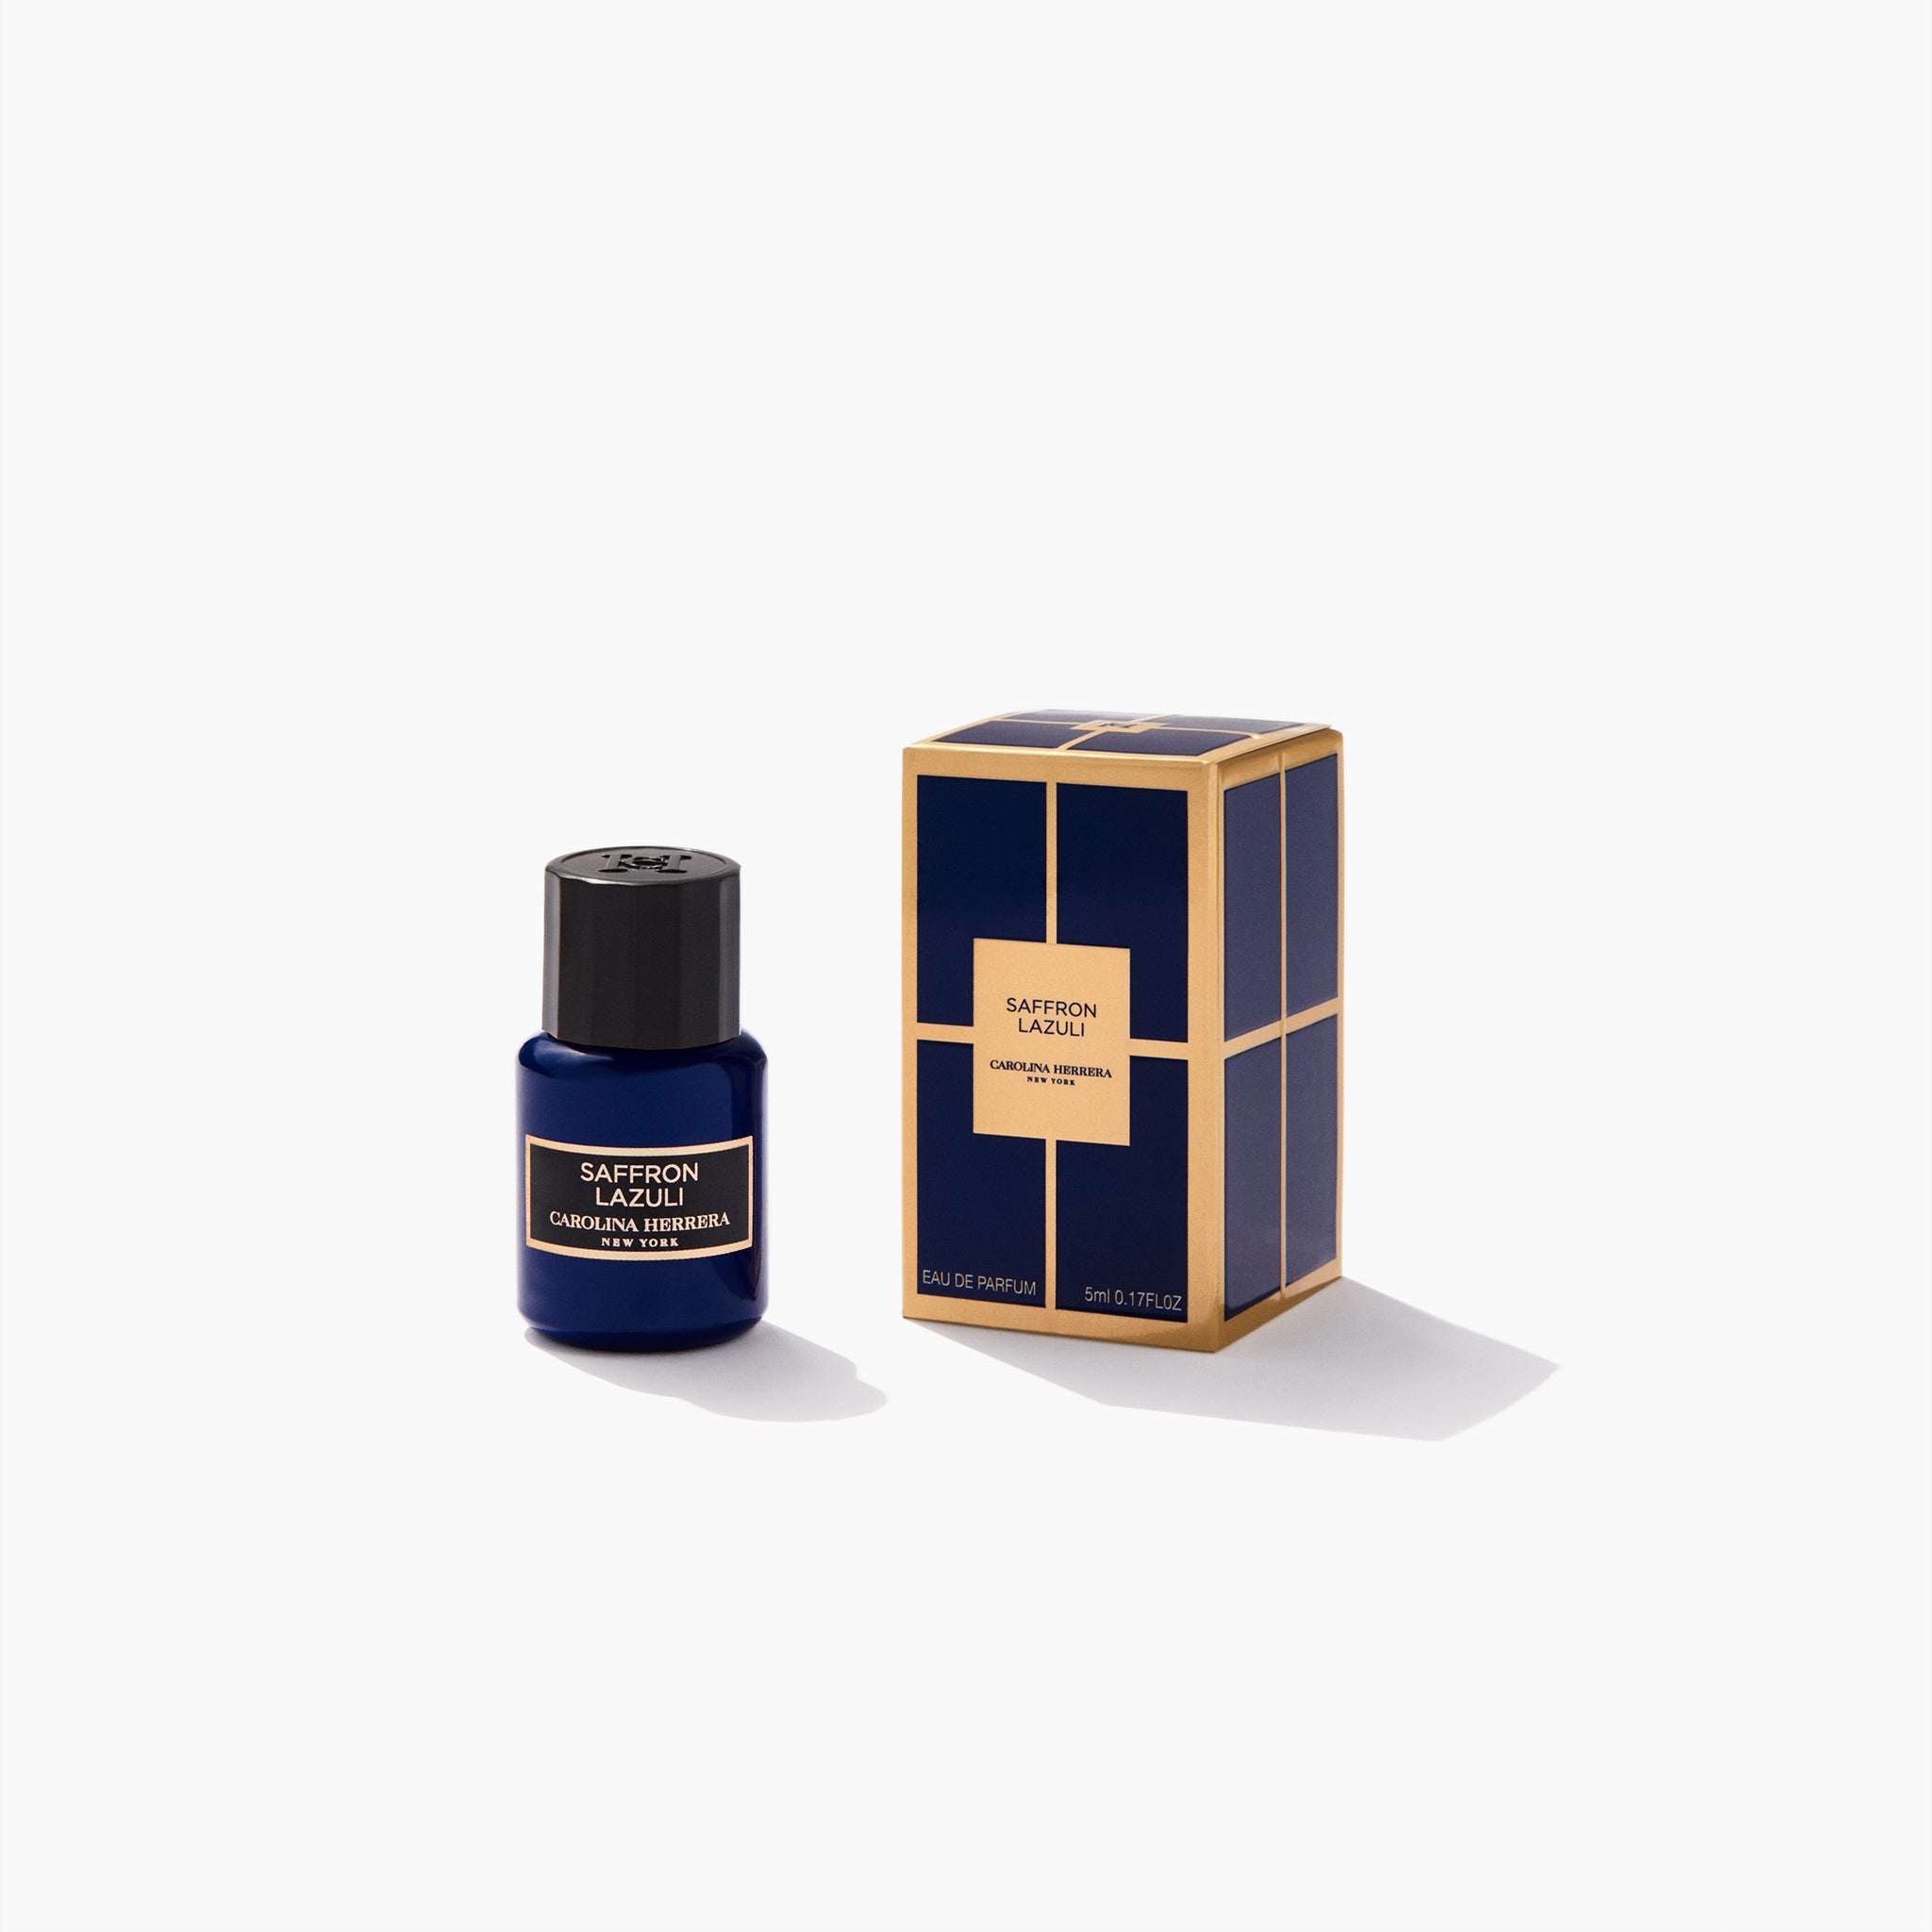 Carolina Herrera Saffron Lazuli EDP | My Perfume Shop Australia